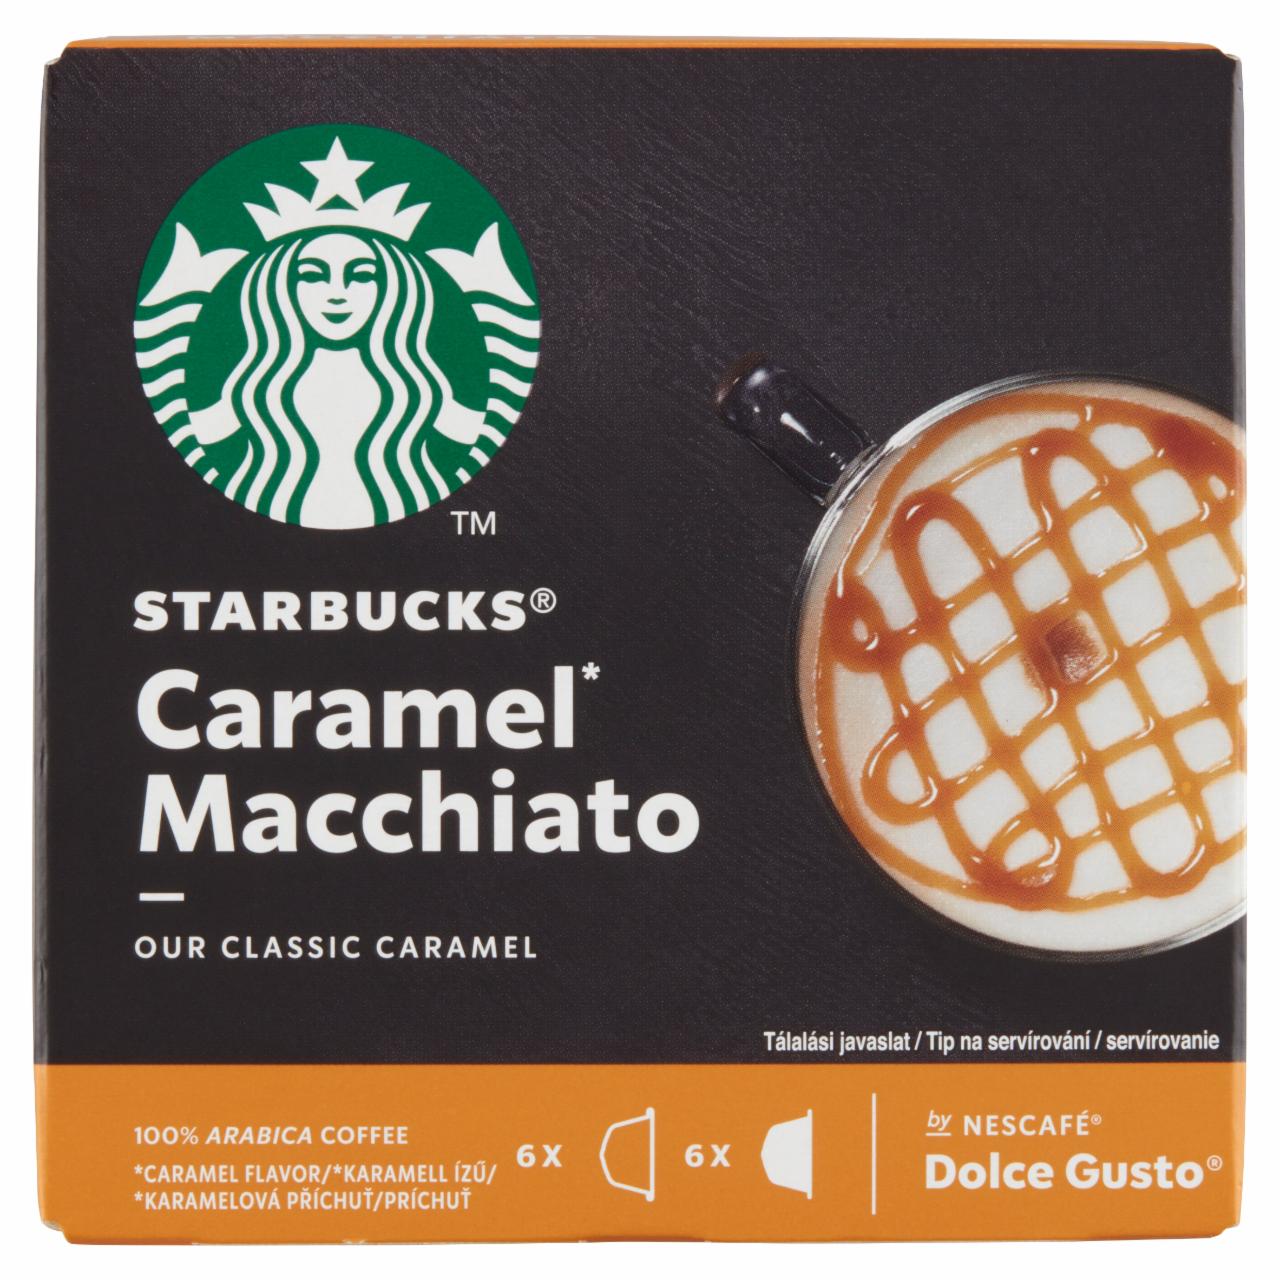 Képek - Starbucks by Nescafé Dolce Gusto Caramel Macchiato tej- és kávékapszula